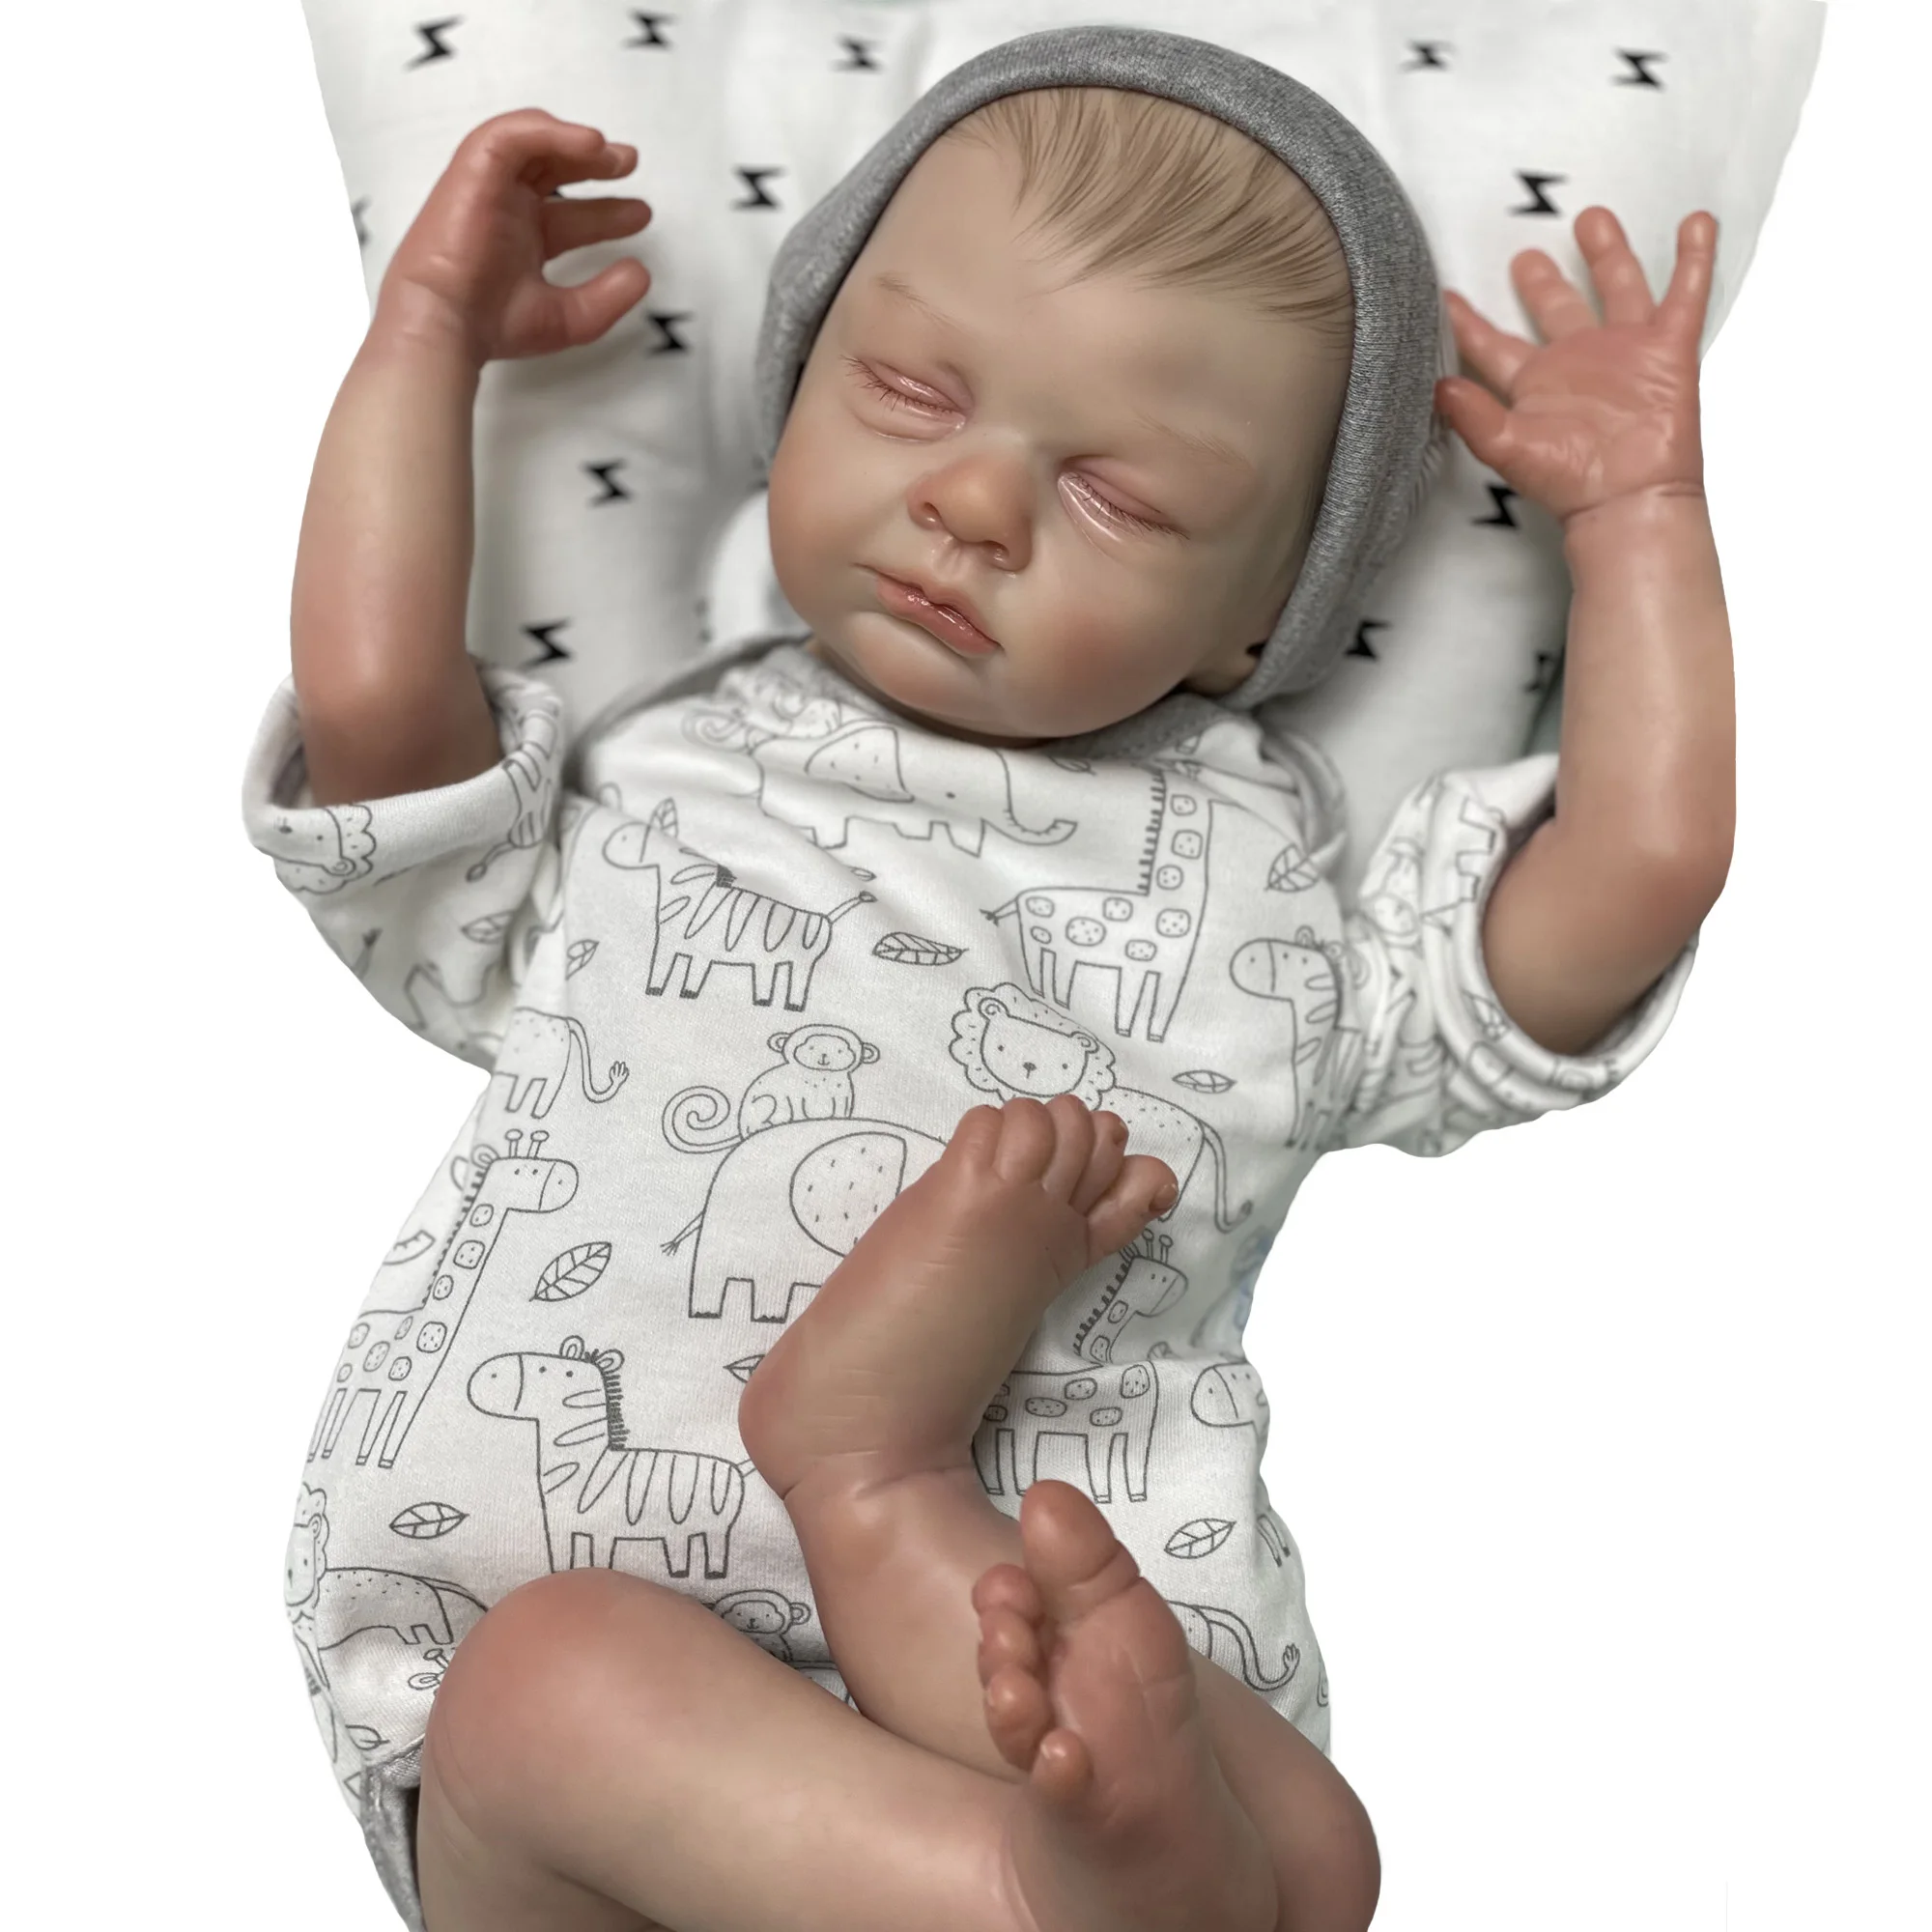 

Куклы Новорожденные 20 дюймов, расписанные вручную, Реалистичная Спящая кукла-младенец с мягким прикосновением, куклы-игрушки, кукла-реборн